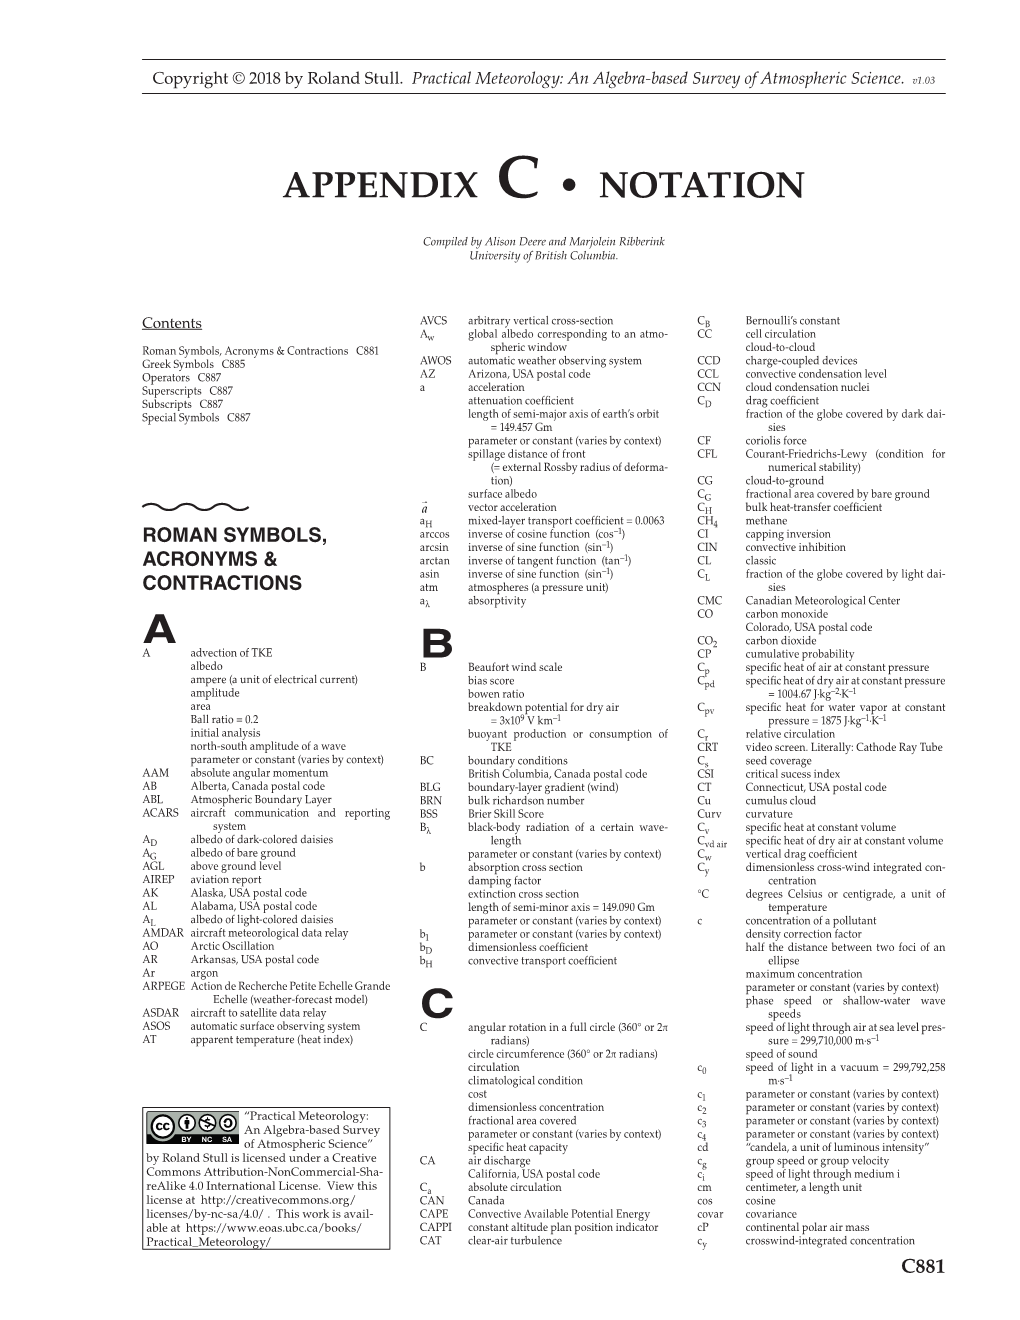 Appendix C • Notation